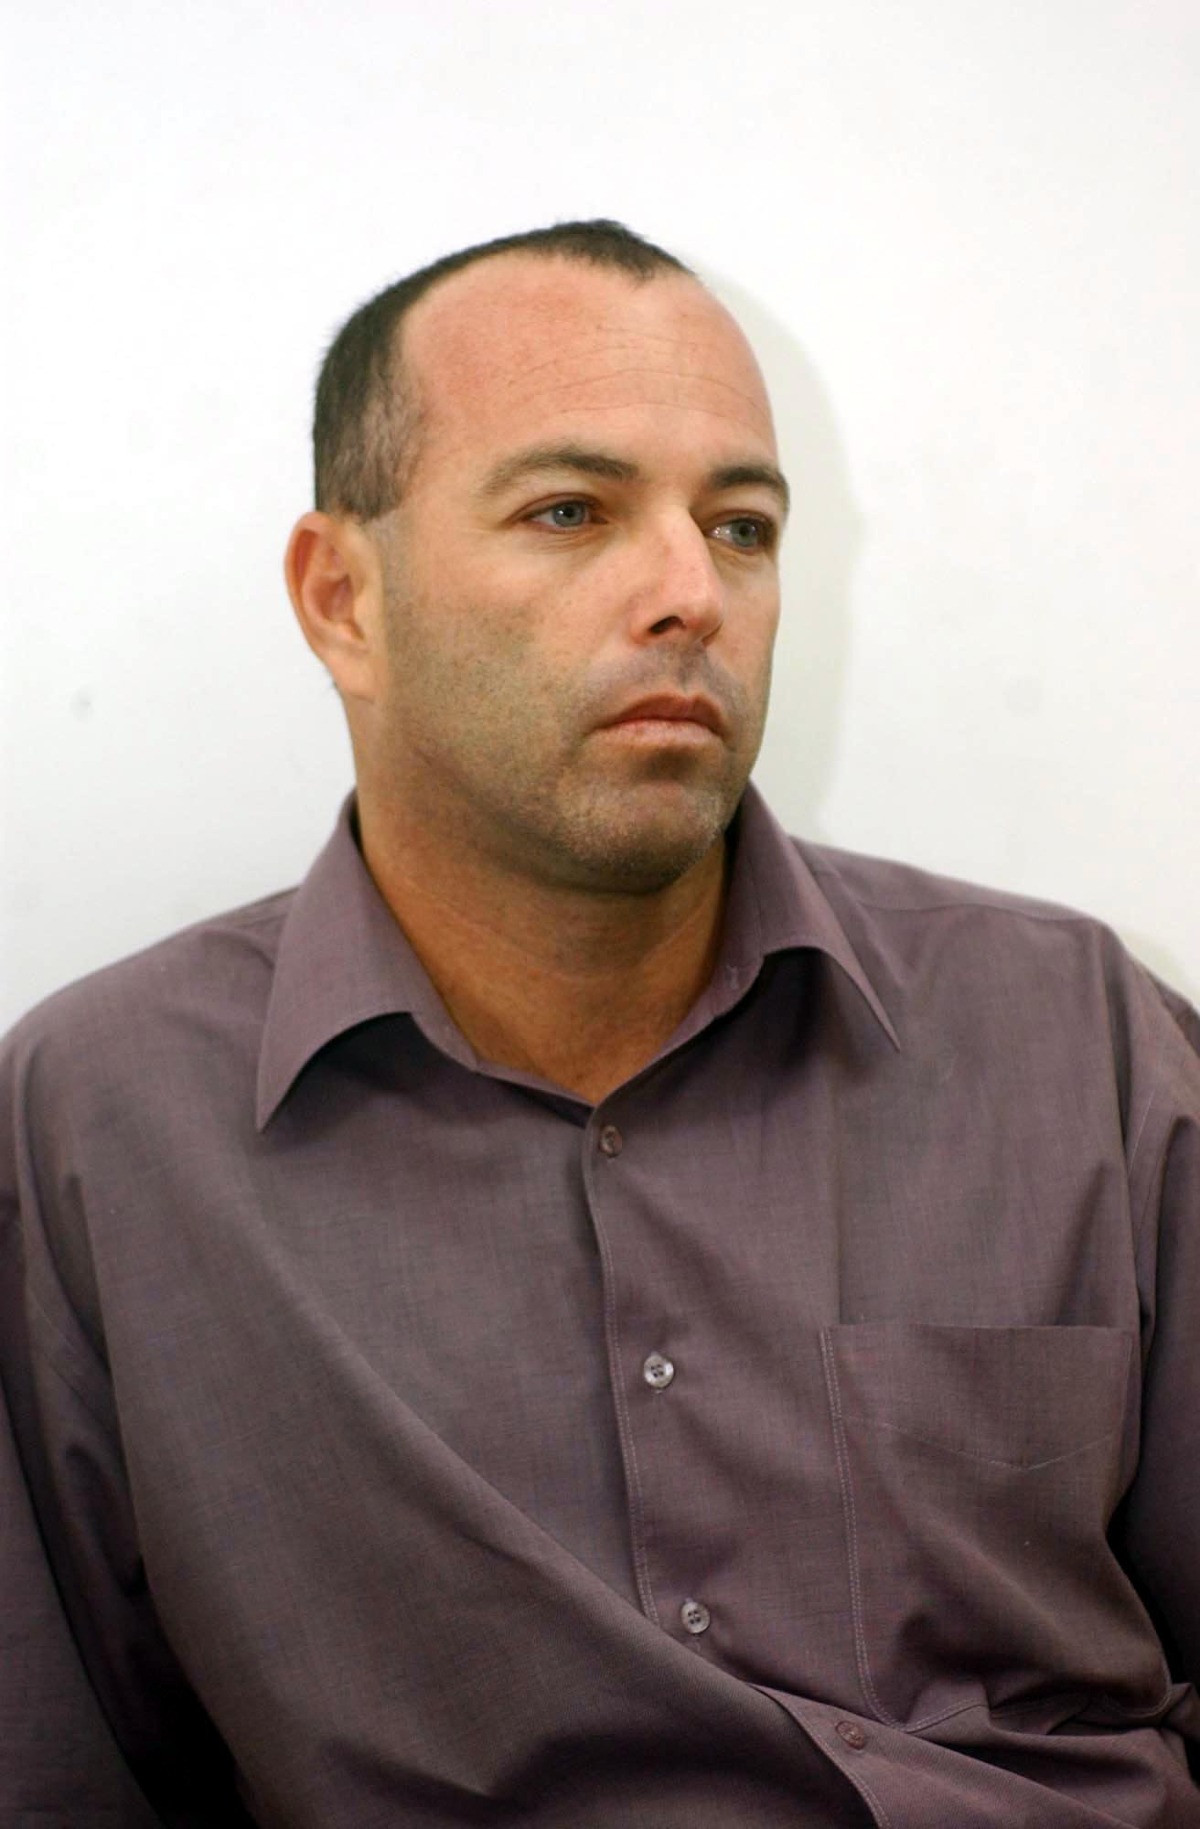  חבר השב"כ לשעבר במשפטו בגין אי מניעת רצח ראש הממשלה יצחק רבין